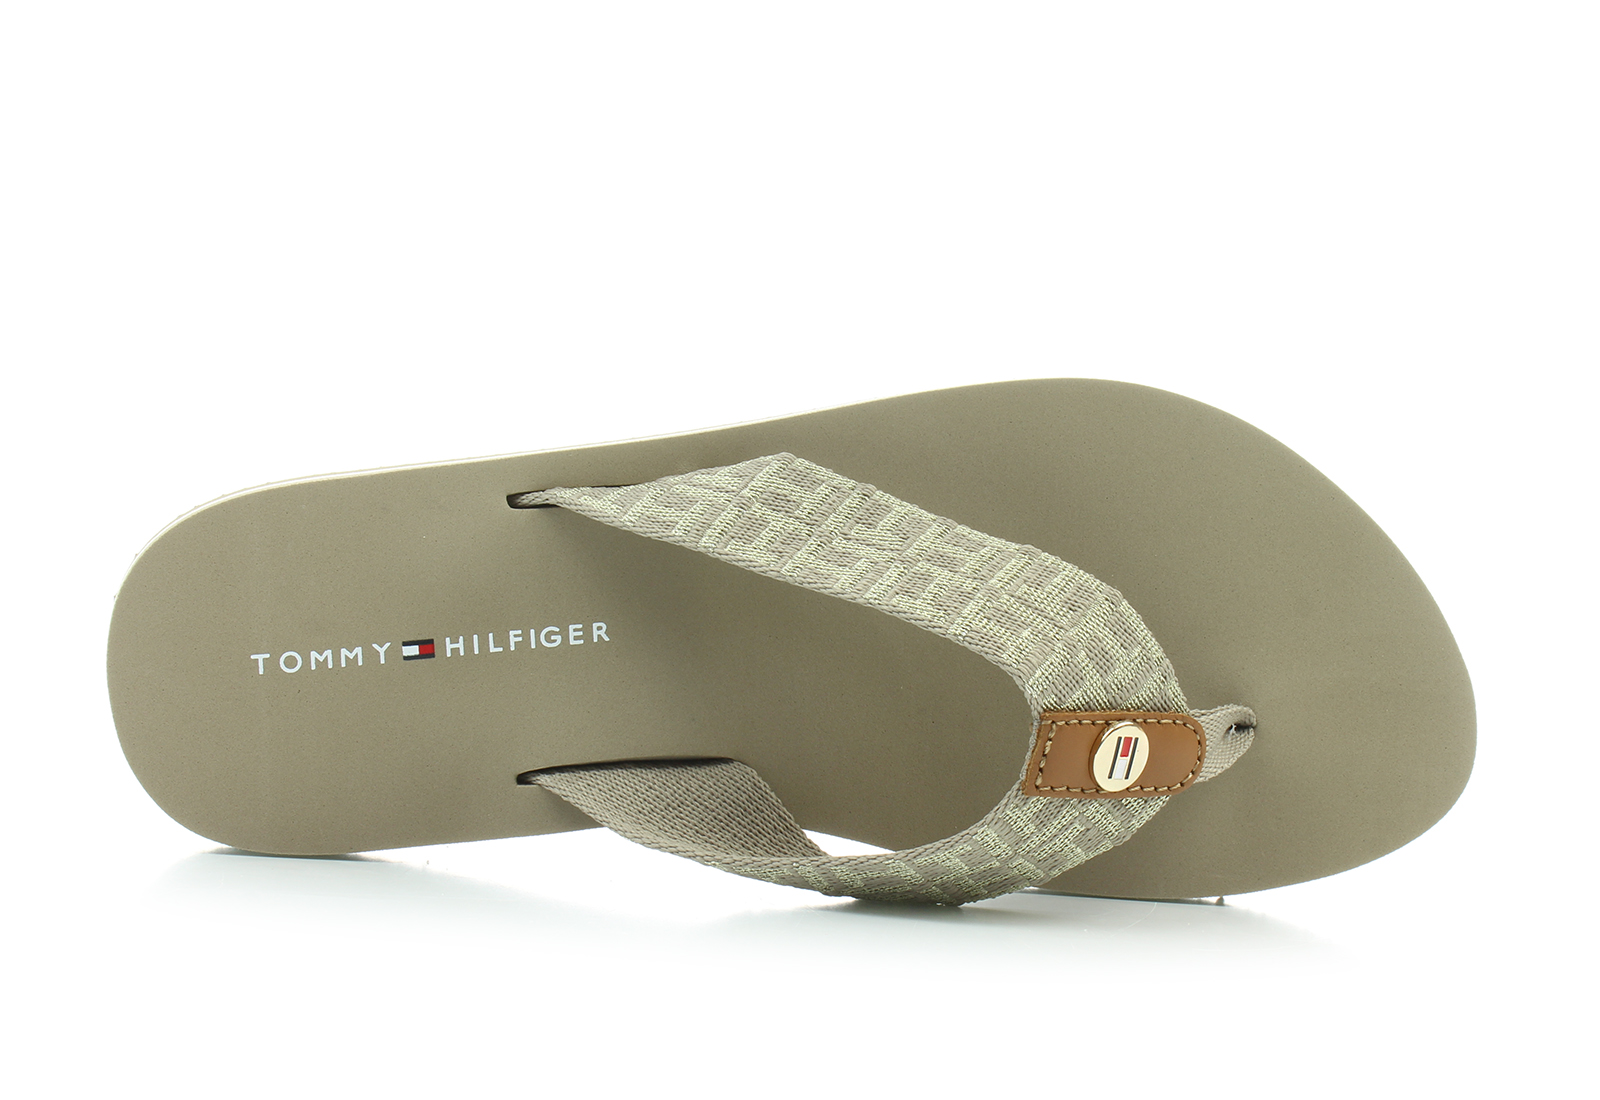 paraply pant puls Tommy Hilfiger Papuče I Natikače Smeđe Japanke - Mellie 15 - Office Shoes -  Online trgovina obuće